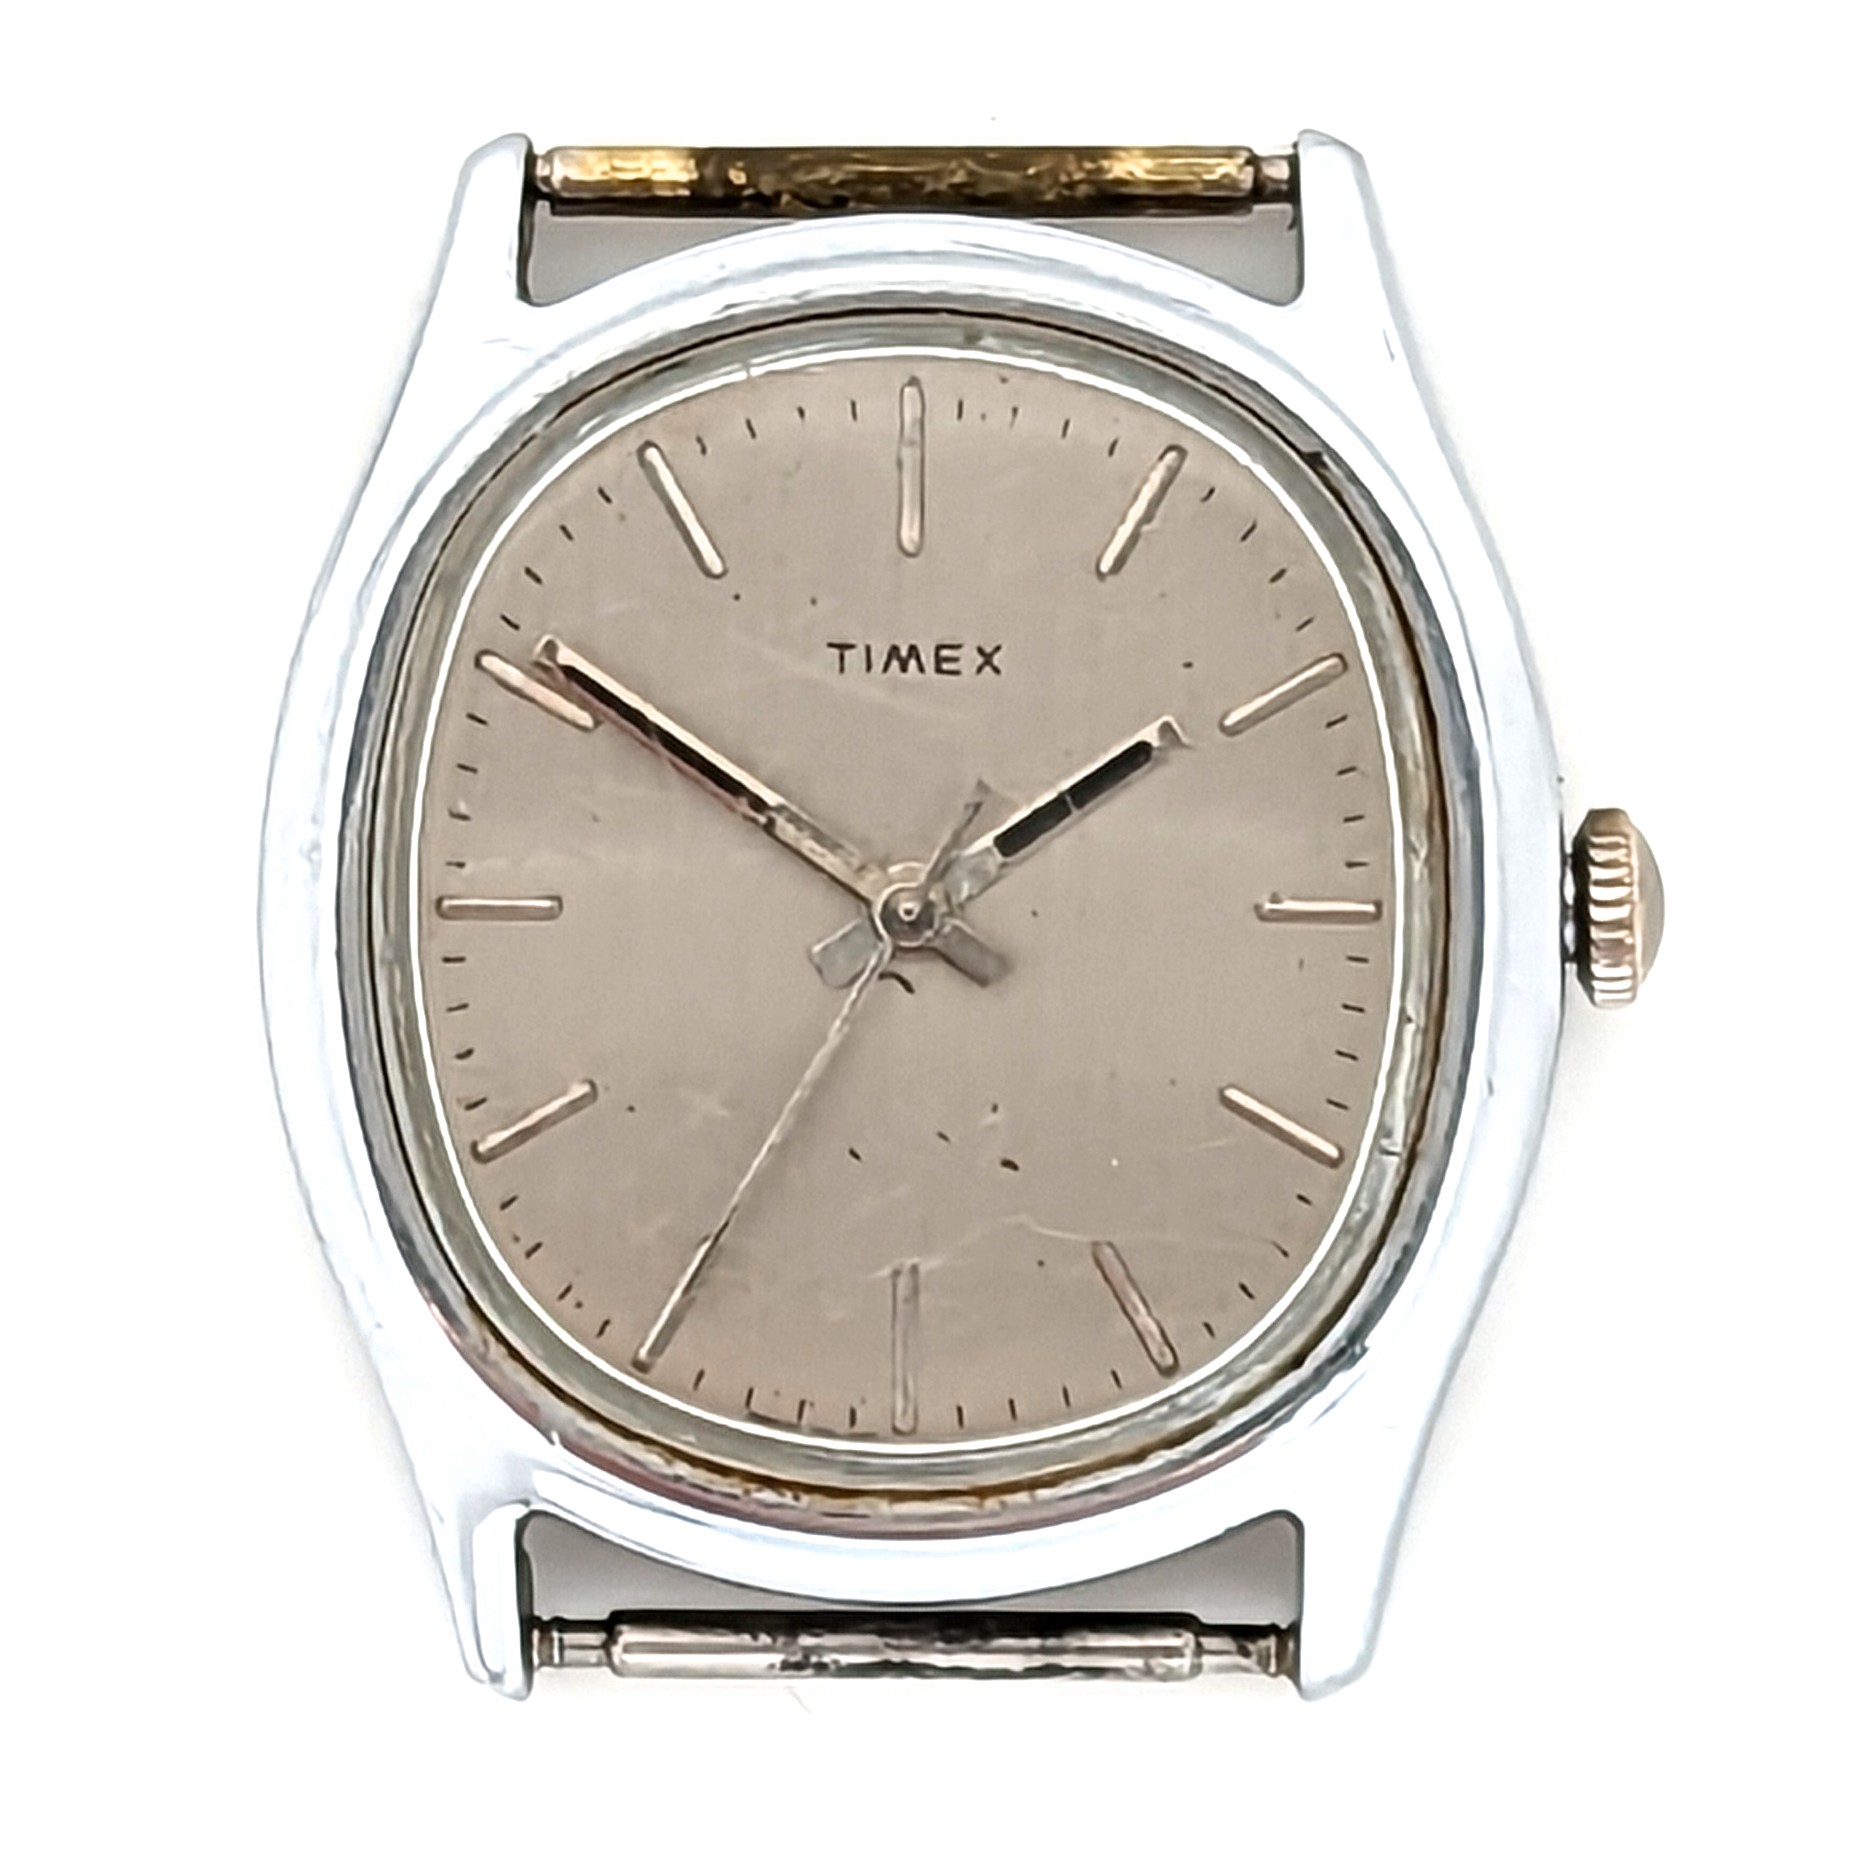 Timex Marlin 26710 11690 [1990]